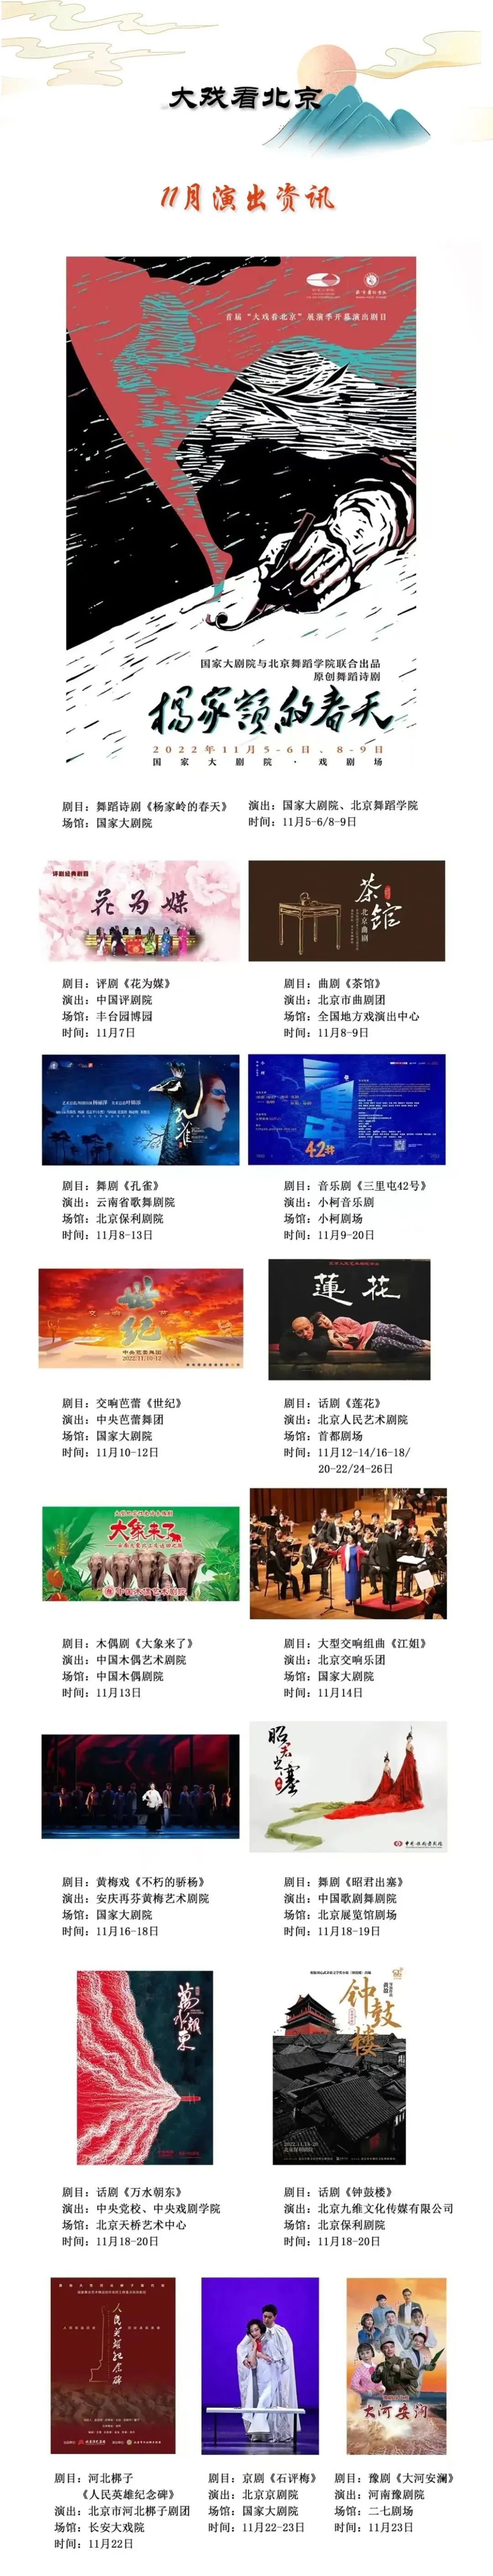 首届“大戏看北京”展演季即将开幕，1588场演出与您文明相约！